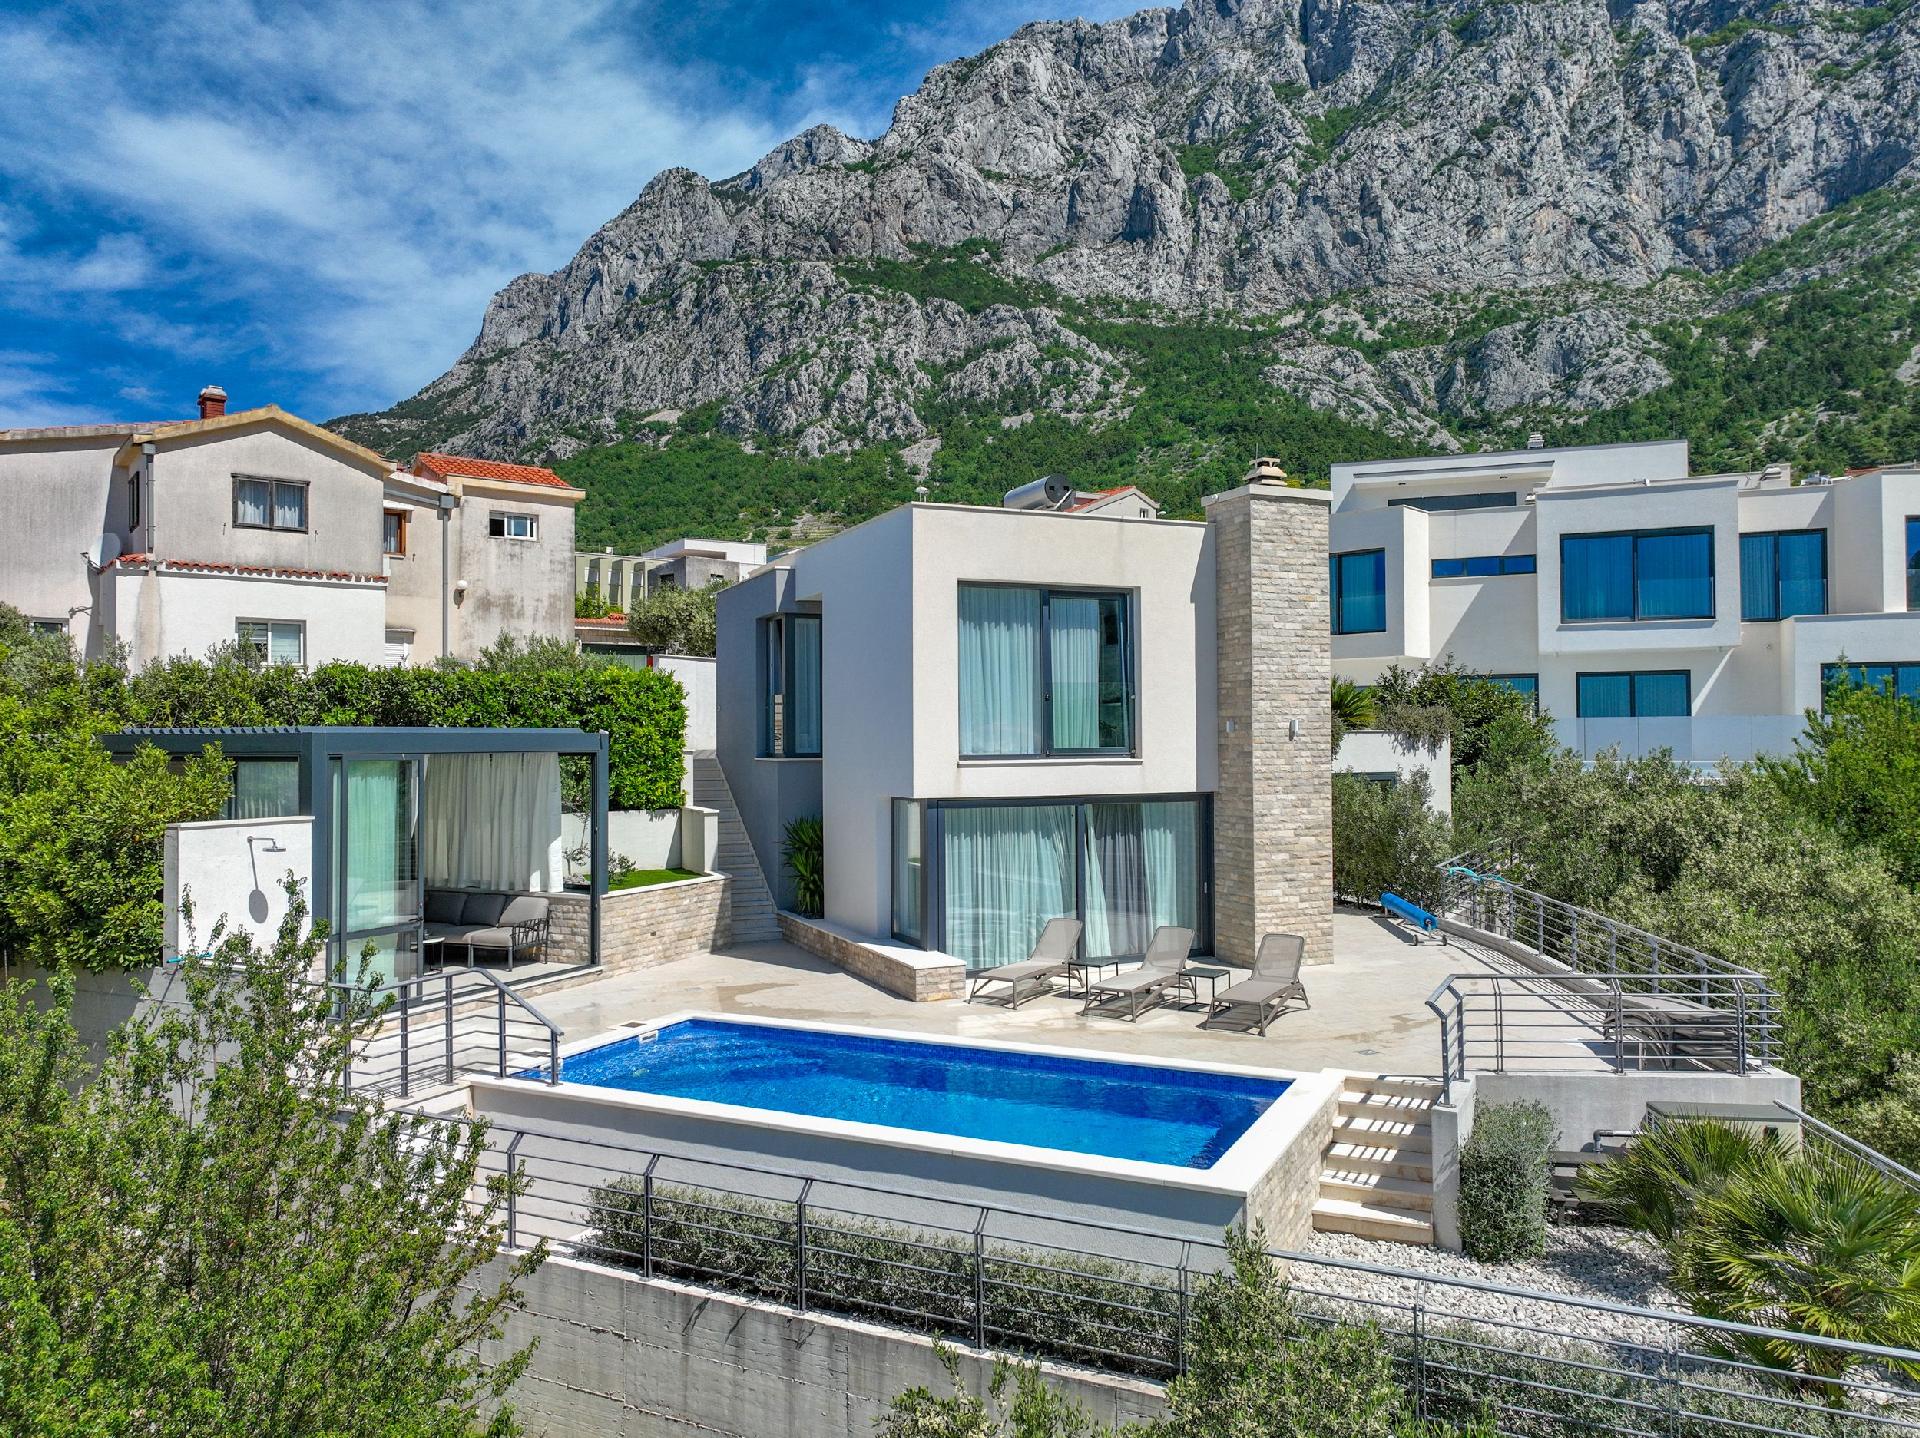 Tolle Villa mit beheiztem Aussenpool, Terrasse mit Ferienhaus in Kroatien